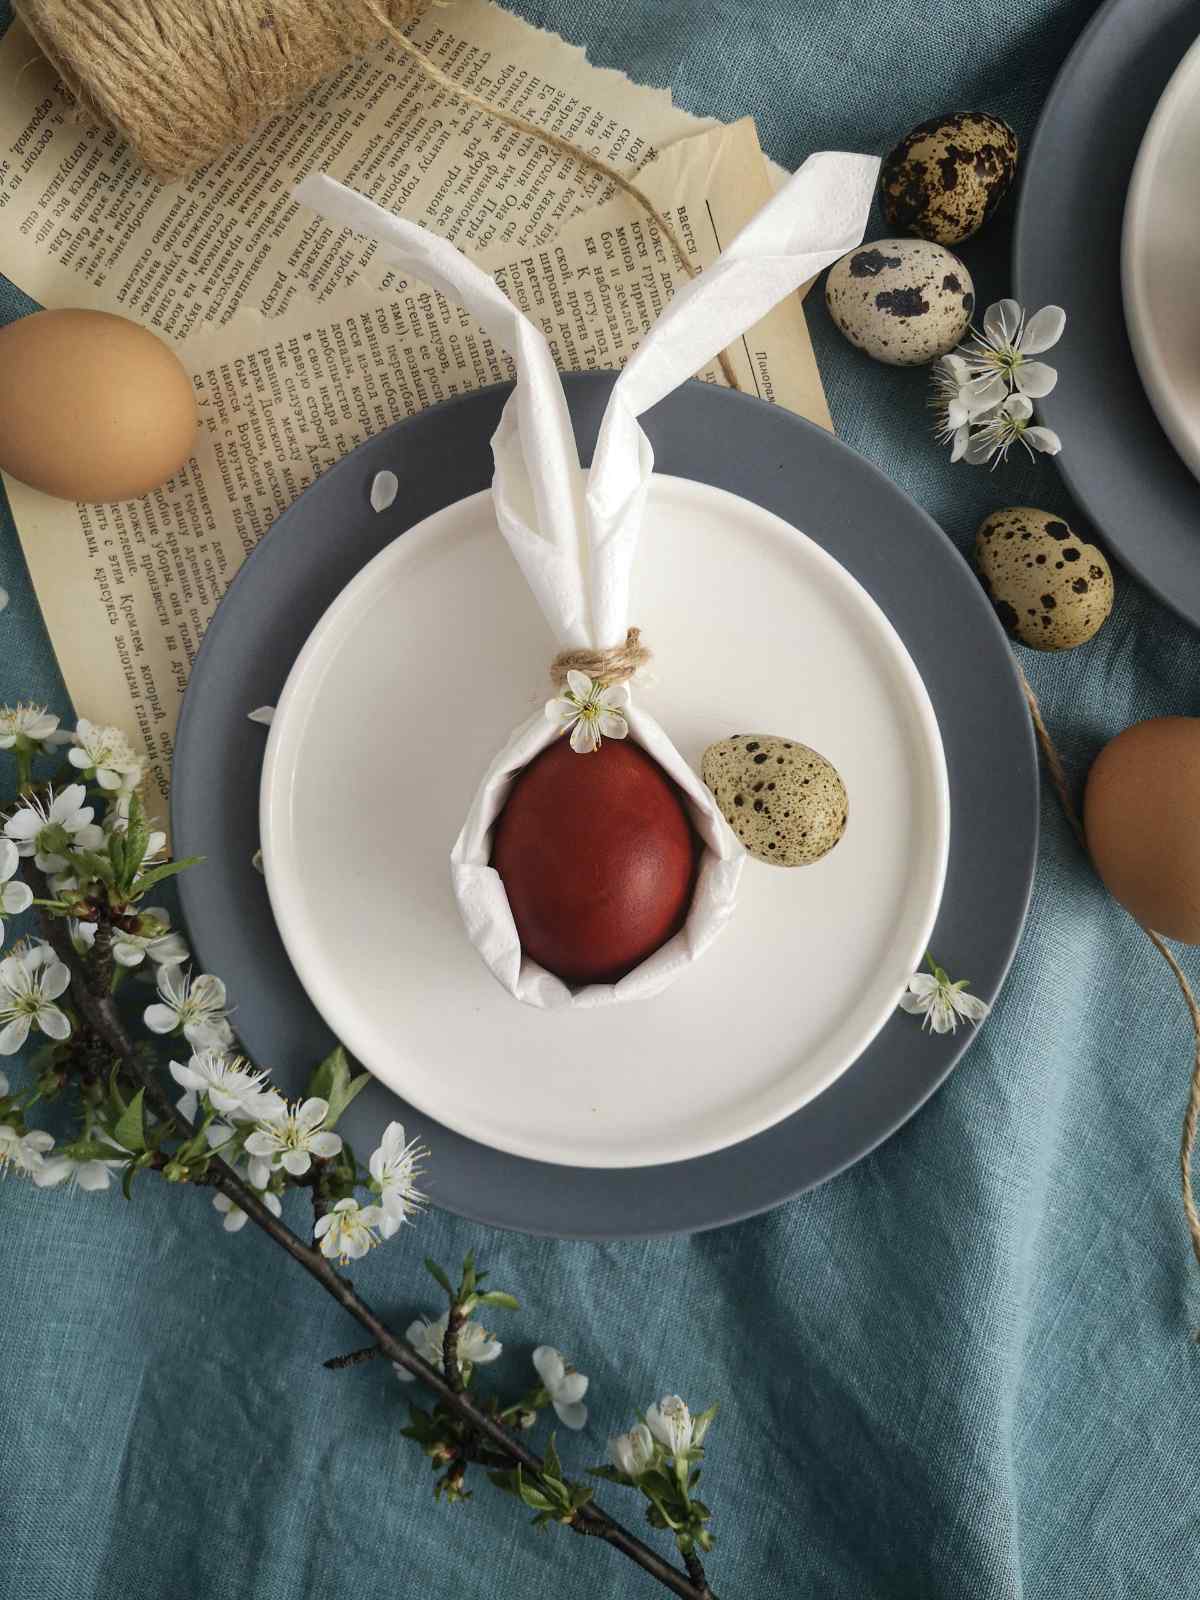 Tischdekoration zu Ostern mit Eiern und einer gefalteten Serviette in Form eines Hasen